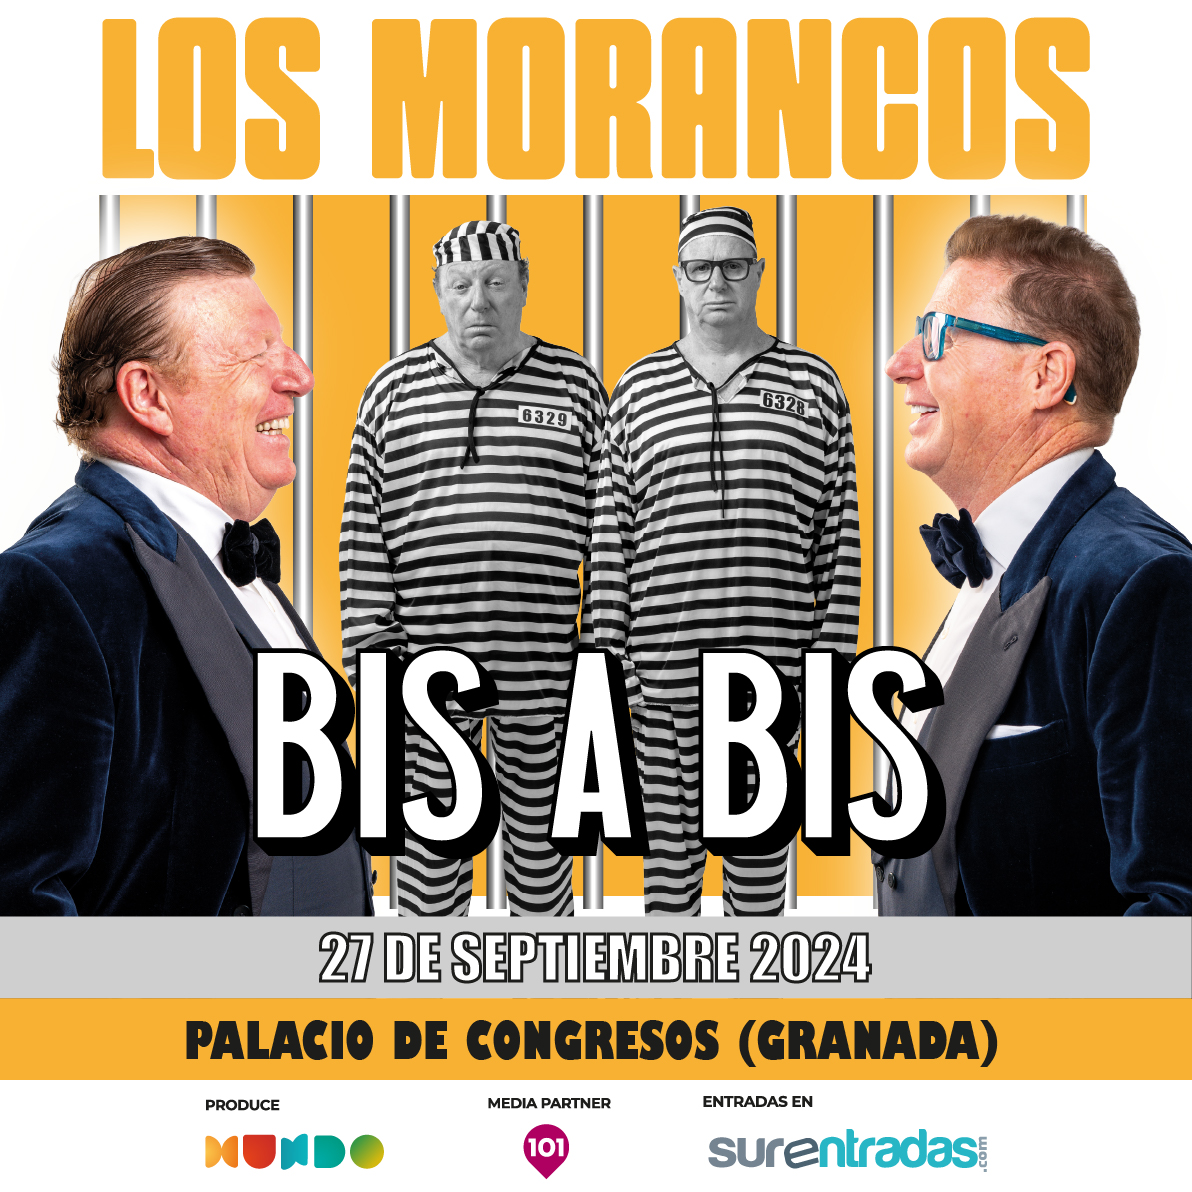 🔔 @LosMorancos llegan al Palacio de Congresos de Granada el próximo 27 de septiembre con su nuevo show: BIS A BIS “El humor está en el punto de mira y los humoristas en el punto de ira”. ¡Las risas están aseguradas! 😏😎 🎟️ ¡Ya a la venta en surentradas.com! 🎟️